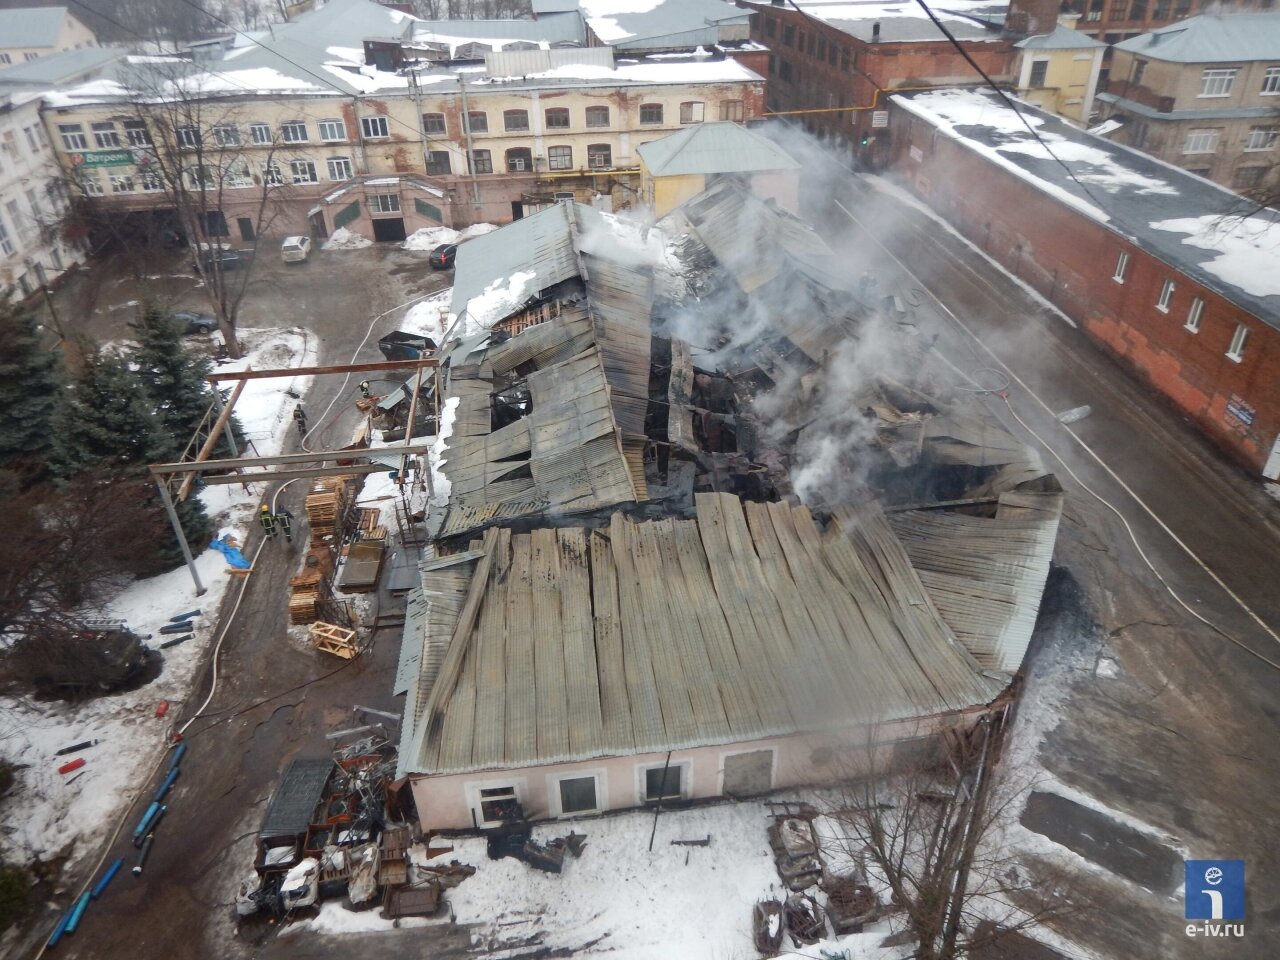 Вид сверху на пожар в одном из помещений фабрики имени Дзержинского, обрушилась крыша, из здания идет дым